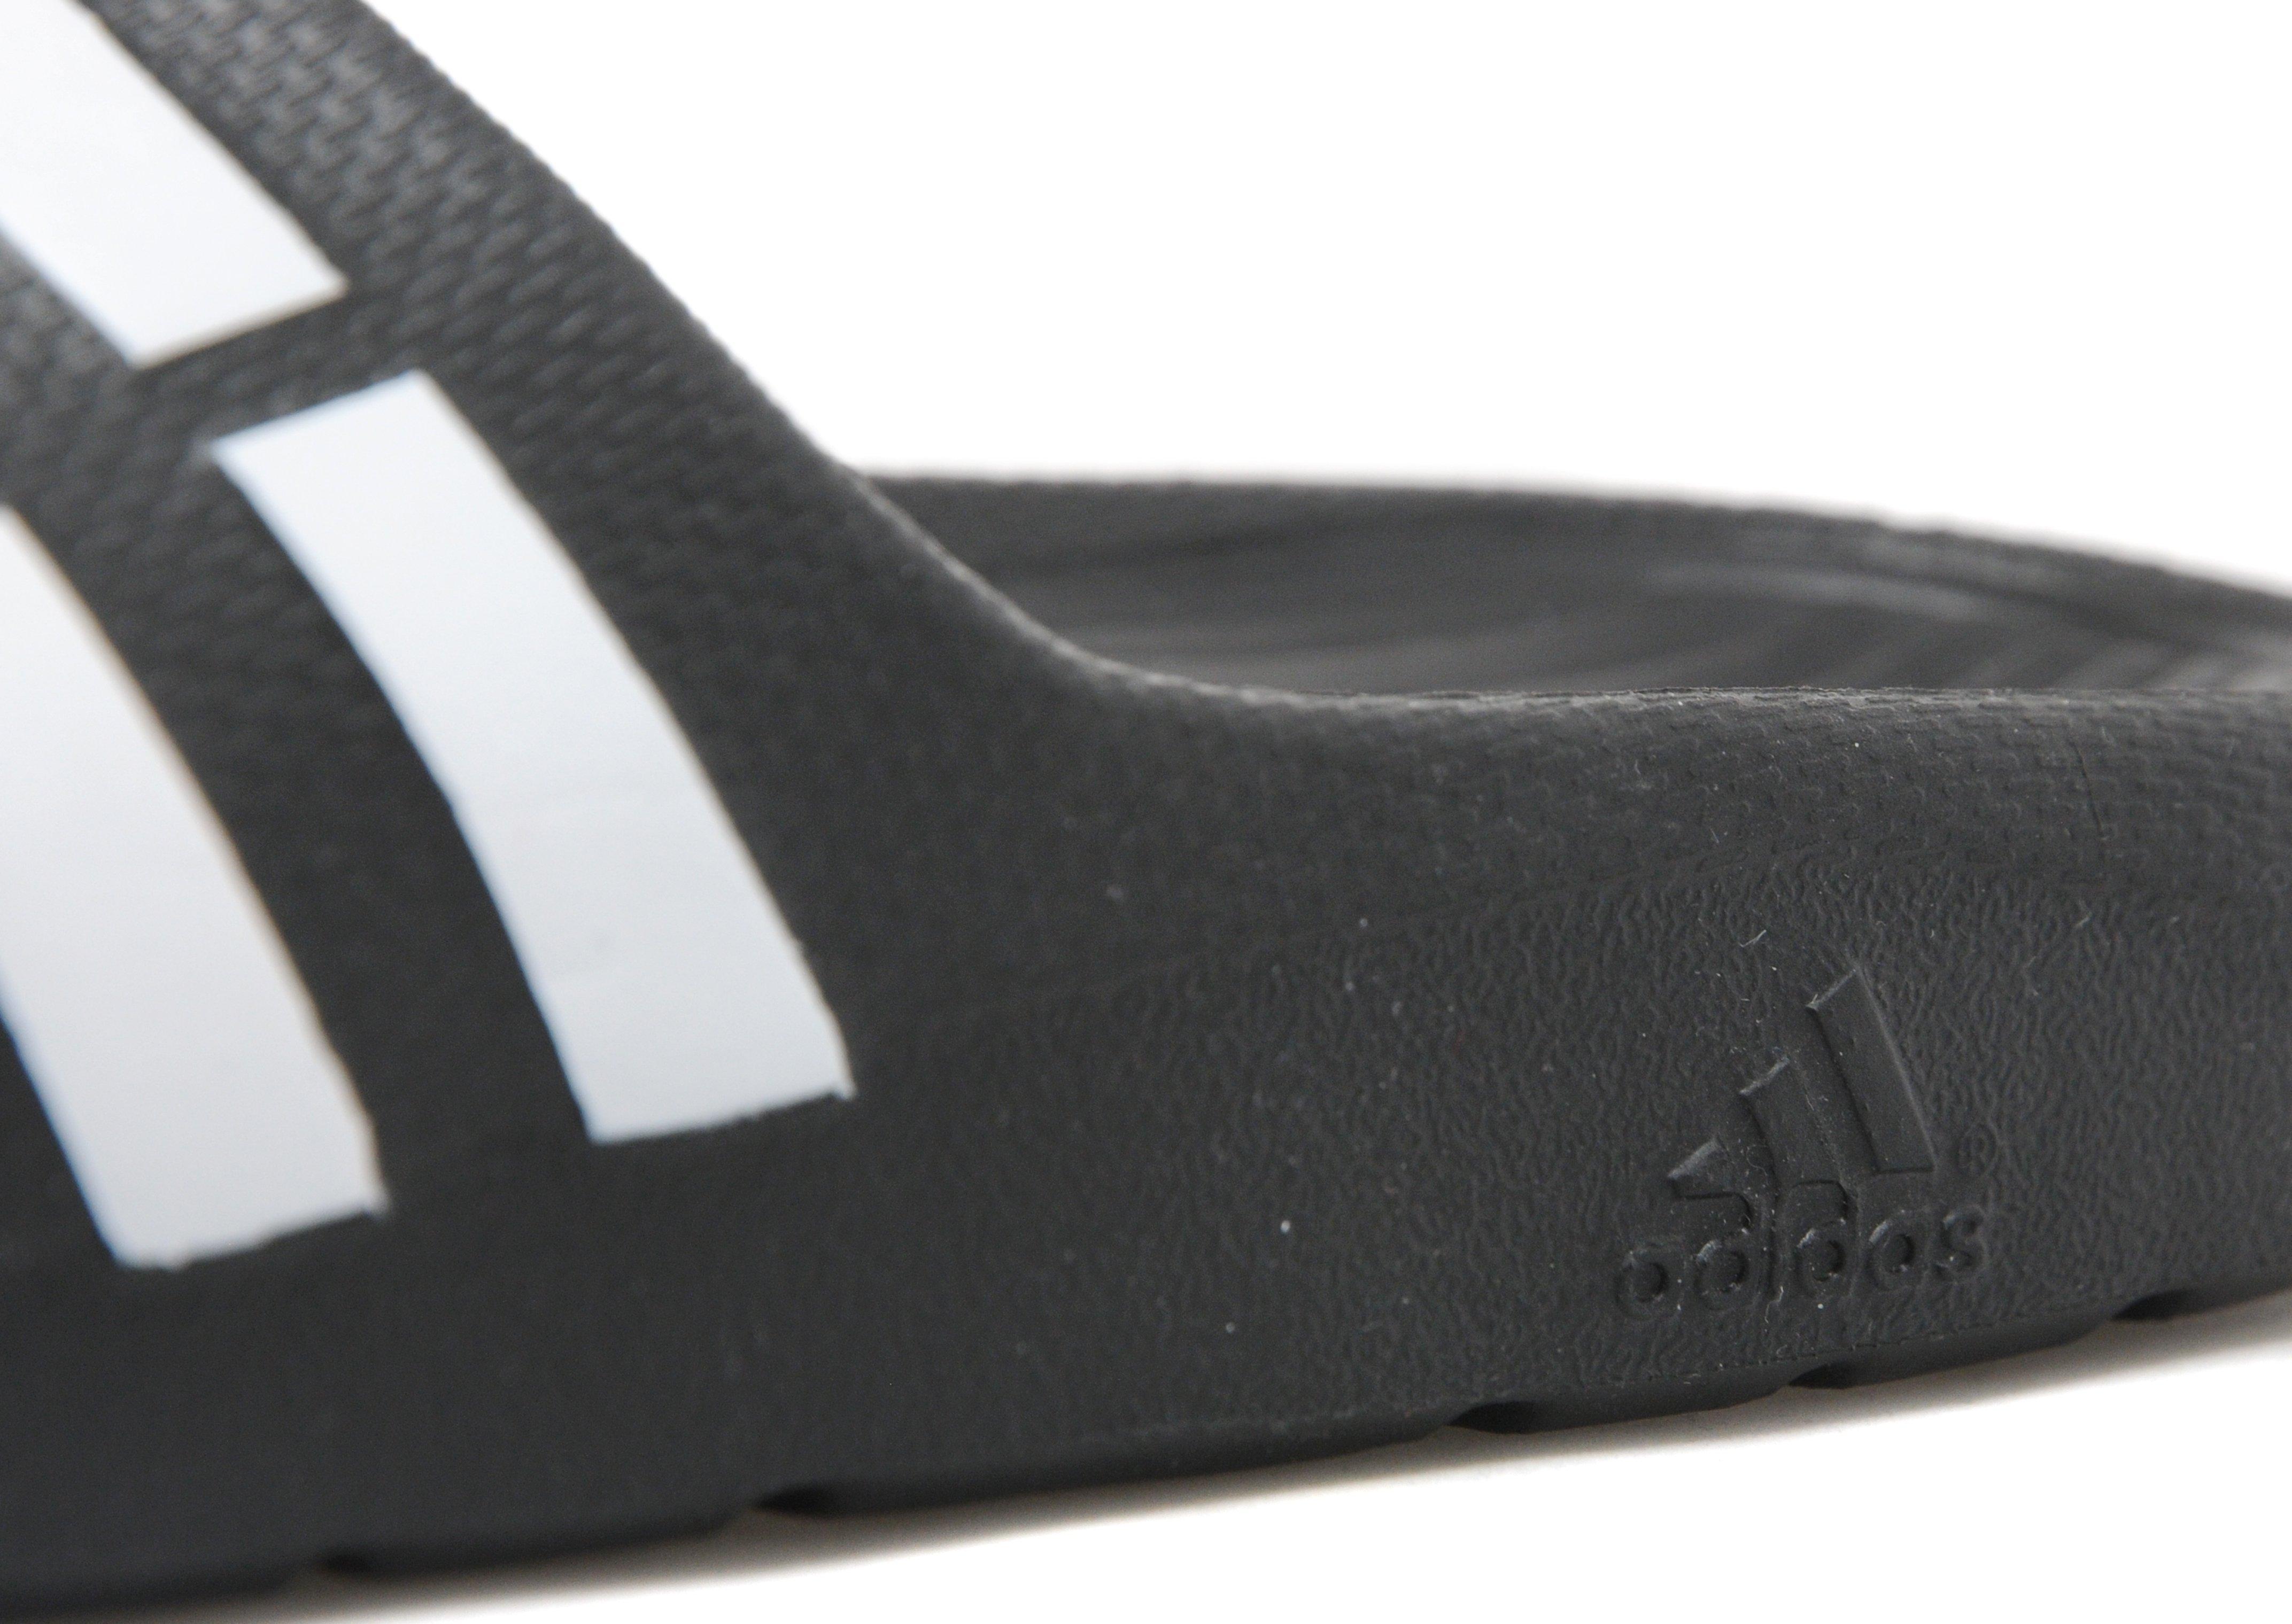 adidas Duramo Slide Sandal in Black/White/Black (Black) - Lyst